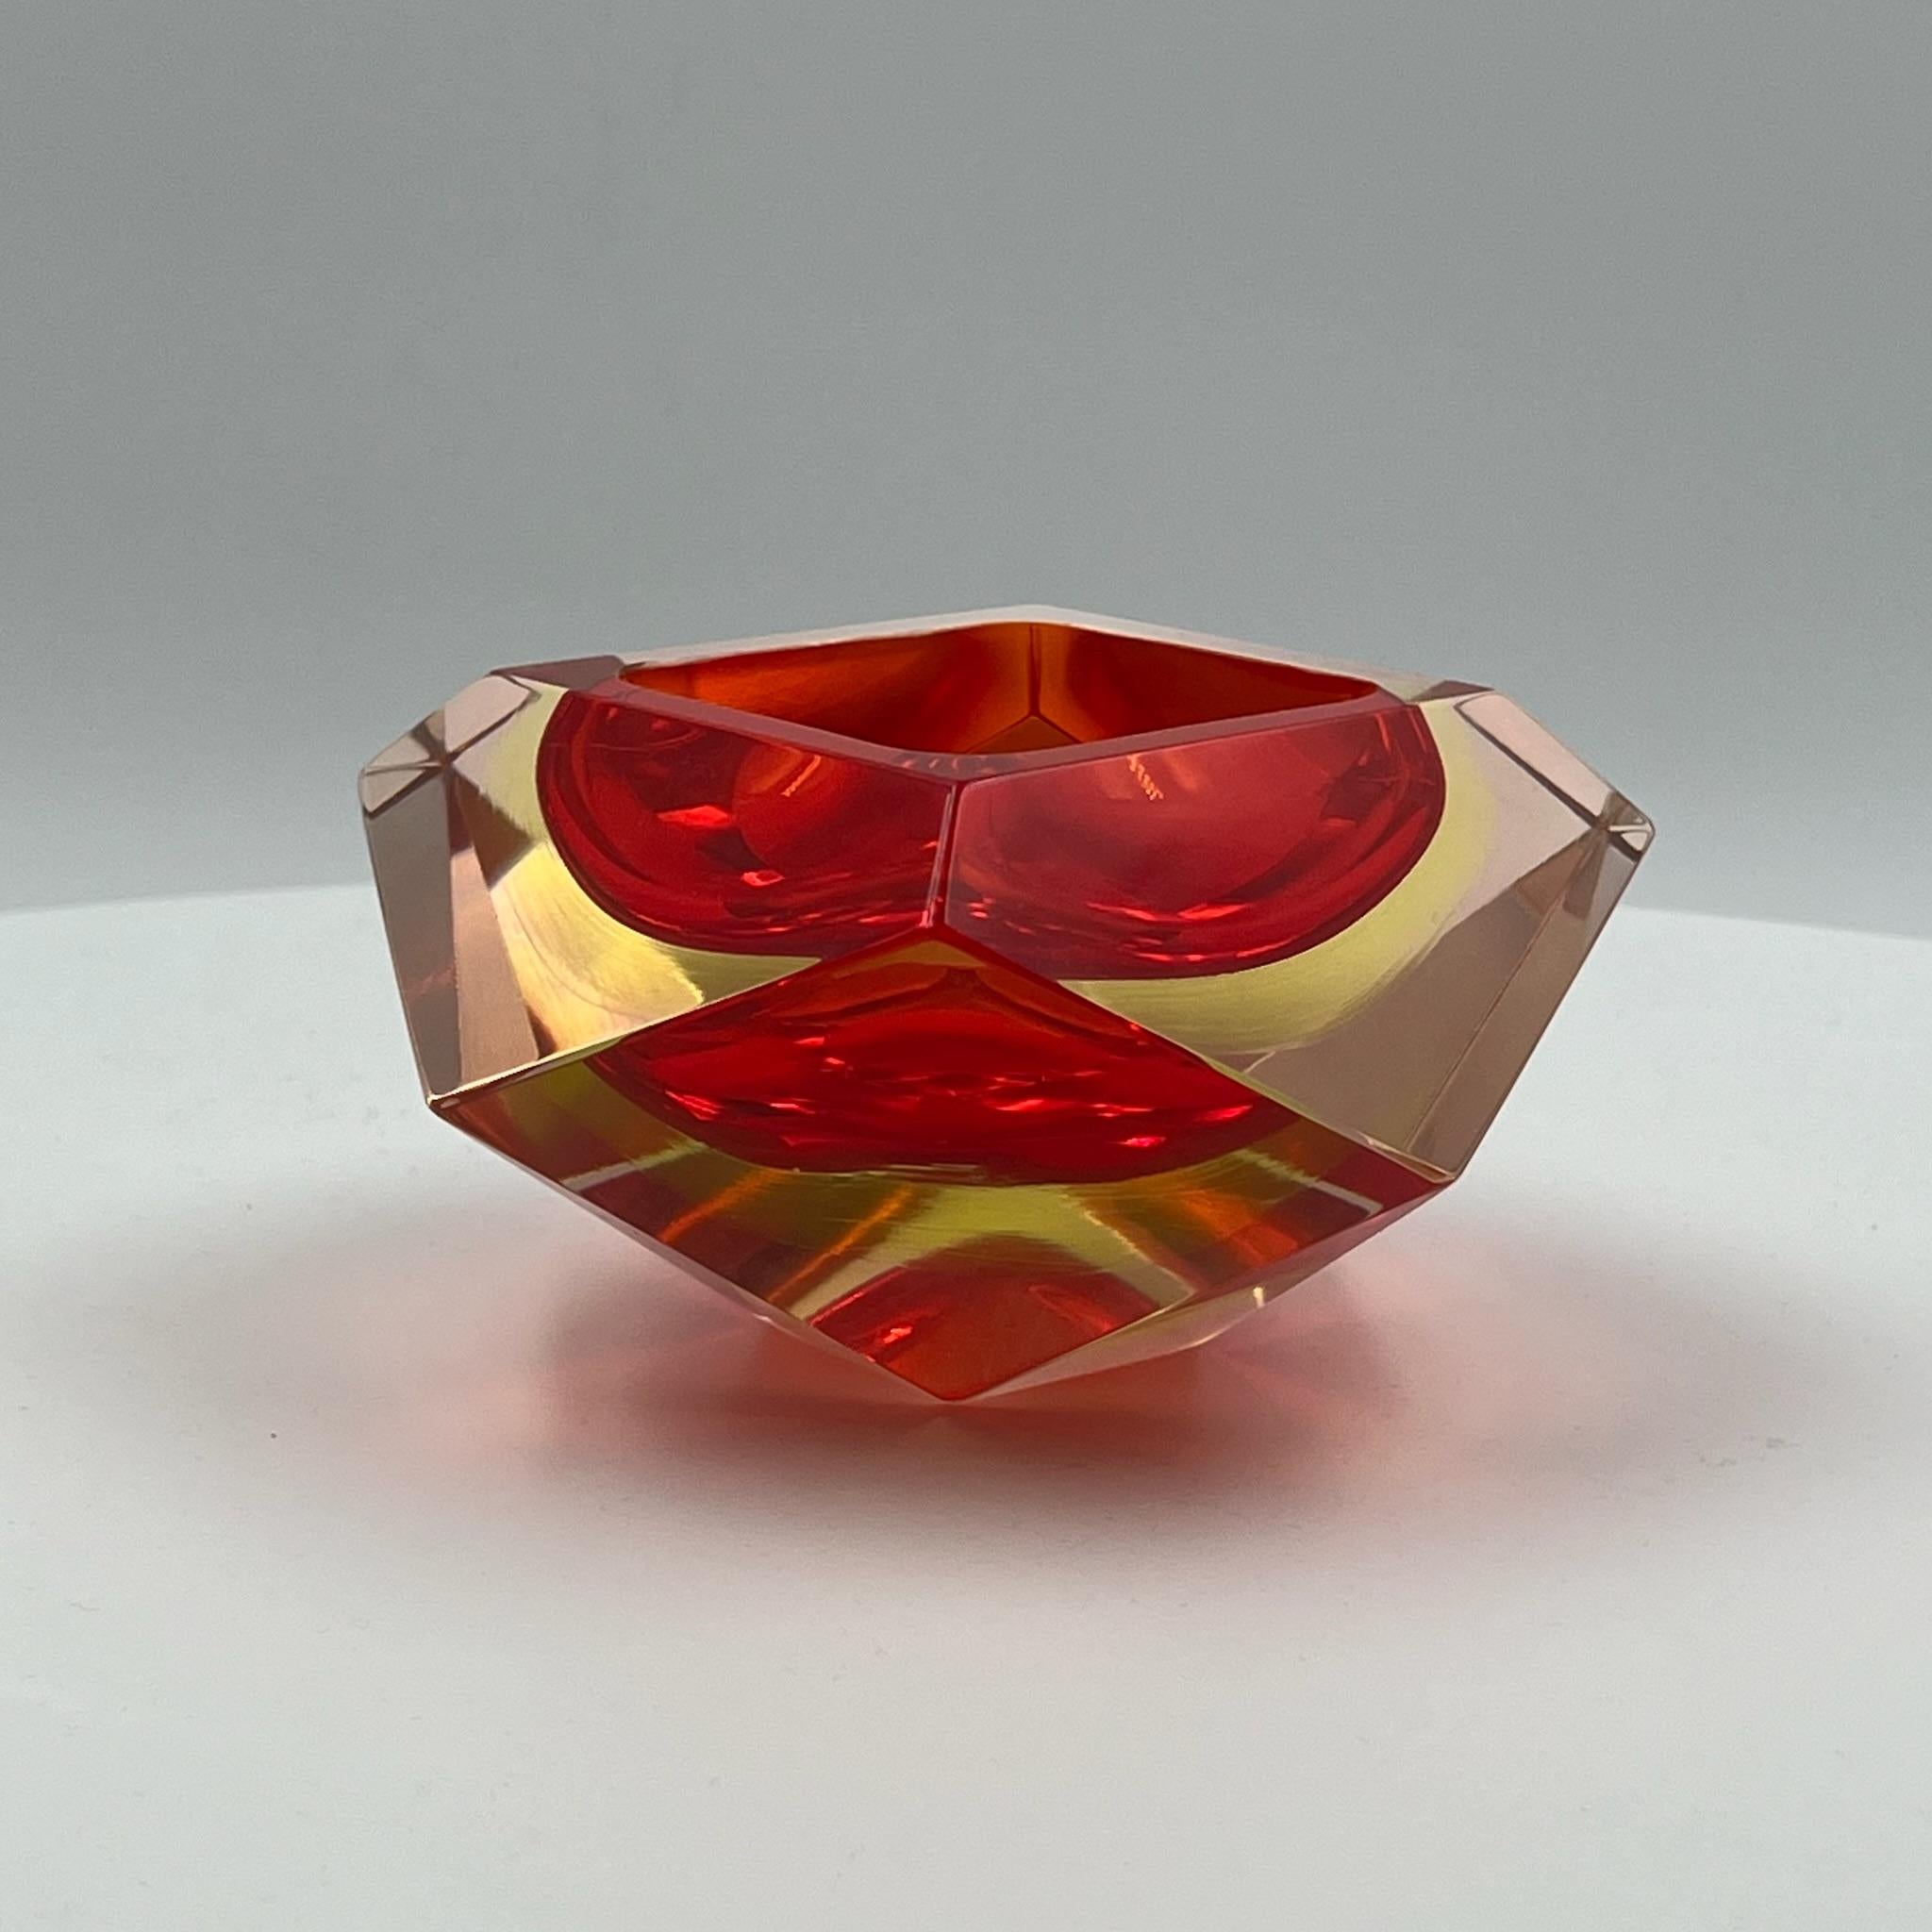 Erhöhen Sie Ihre Einrichtung mit der zeitlosen Eleganz dieser exquisiten Vase aus Murano-Sommerso-Glas, im Stil des berühmten Fabio Poli für Seguso. Diese skulpturale Vase wird mit Präzision und Kunstfertigkeit hergestellt und verkörpert die